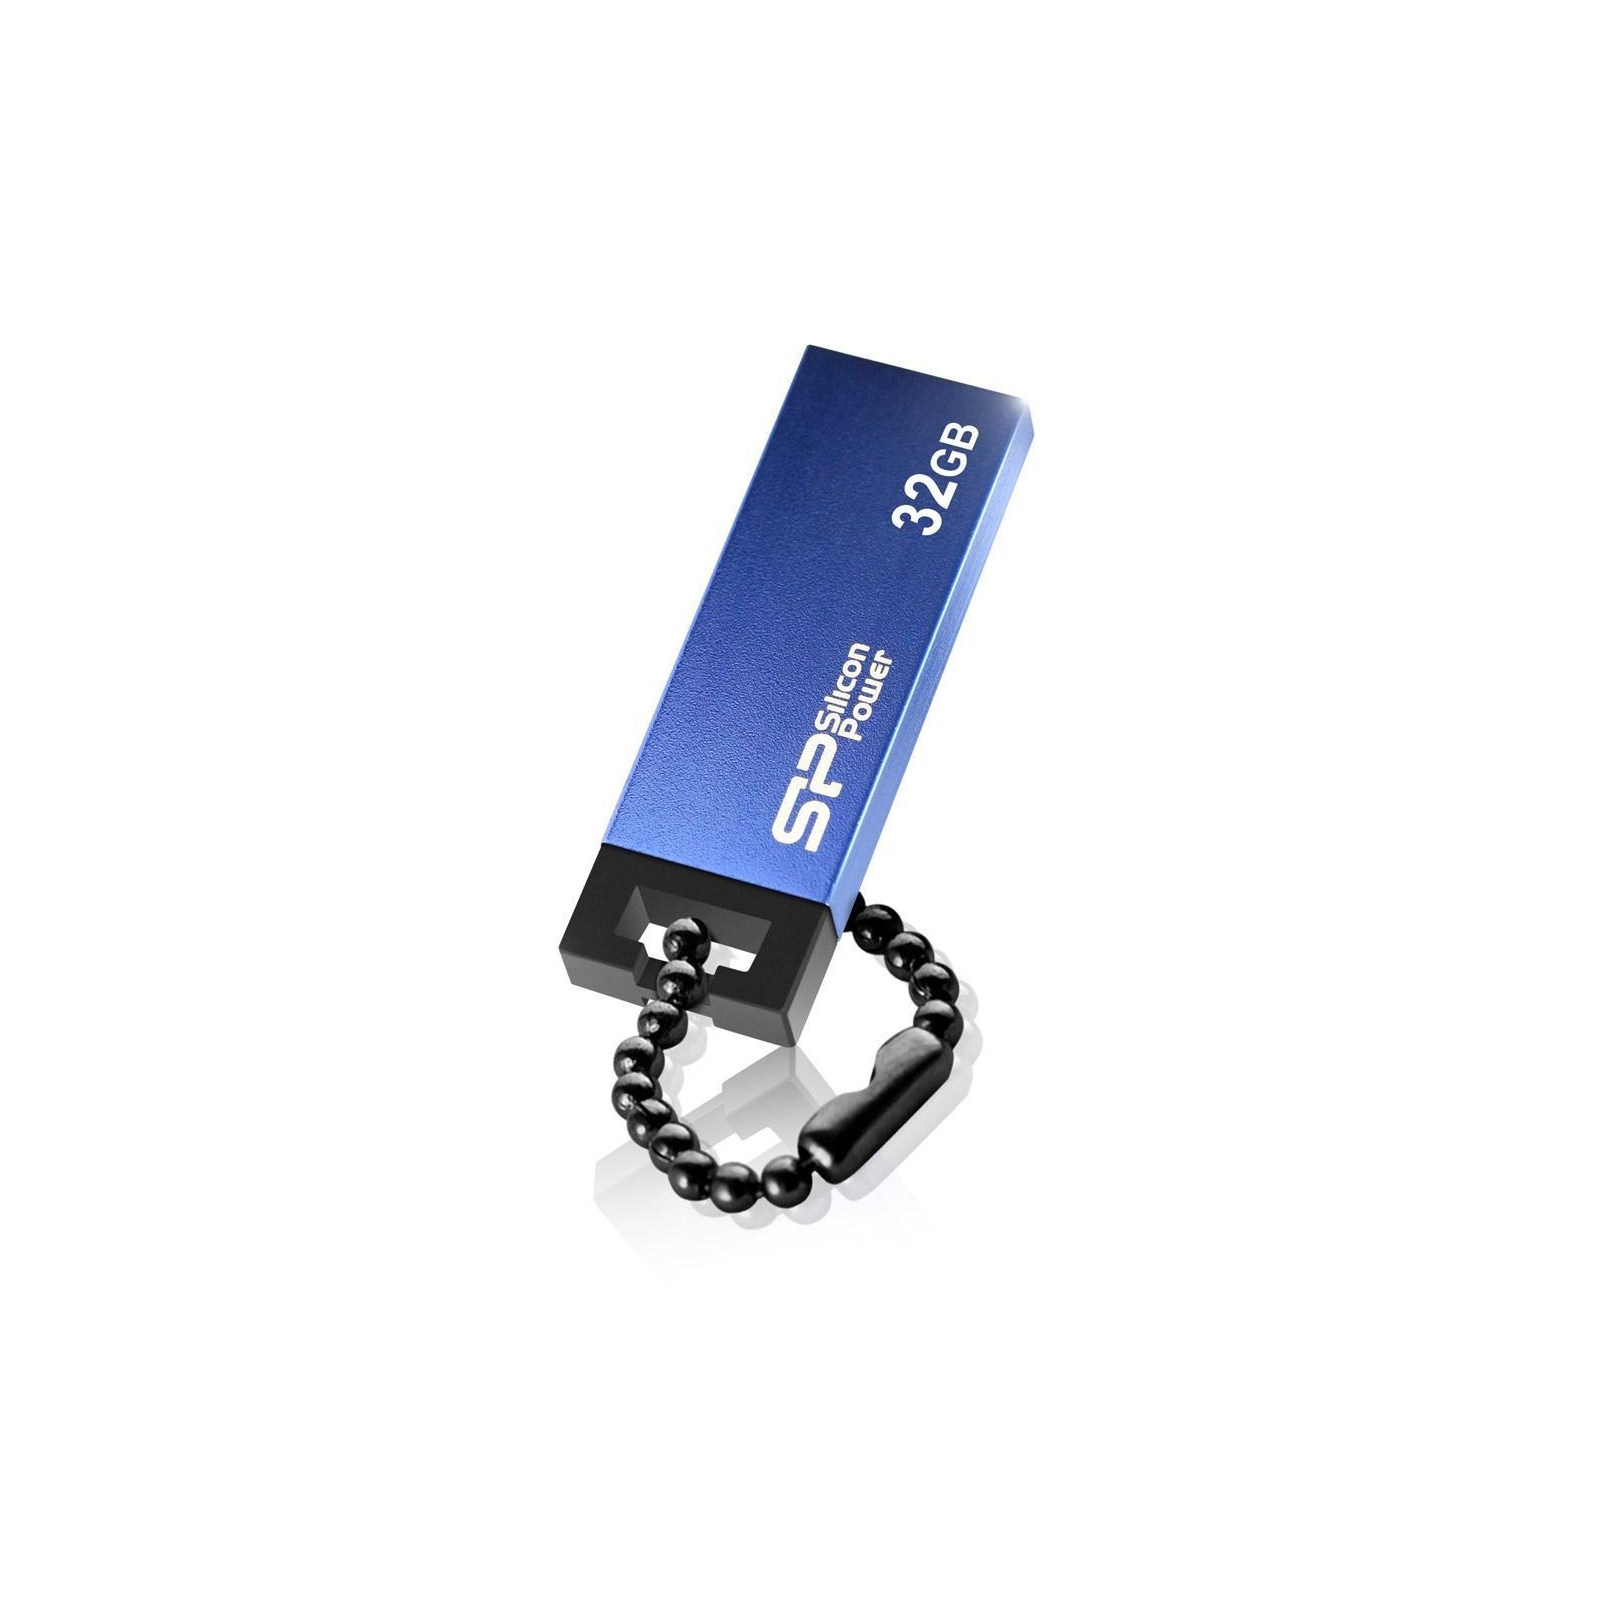 USB флеш накопитель Silicon Power 32GB 835 Blue USB 2.0 (SP032GBUF2835V1B) изображение 4